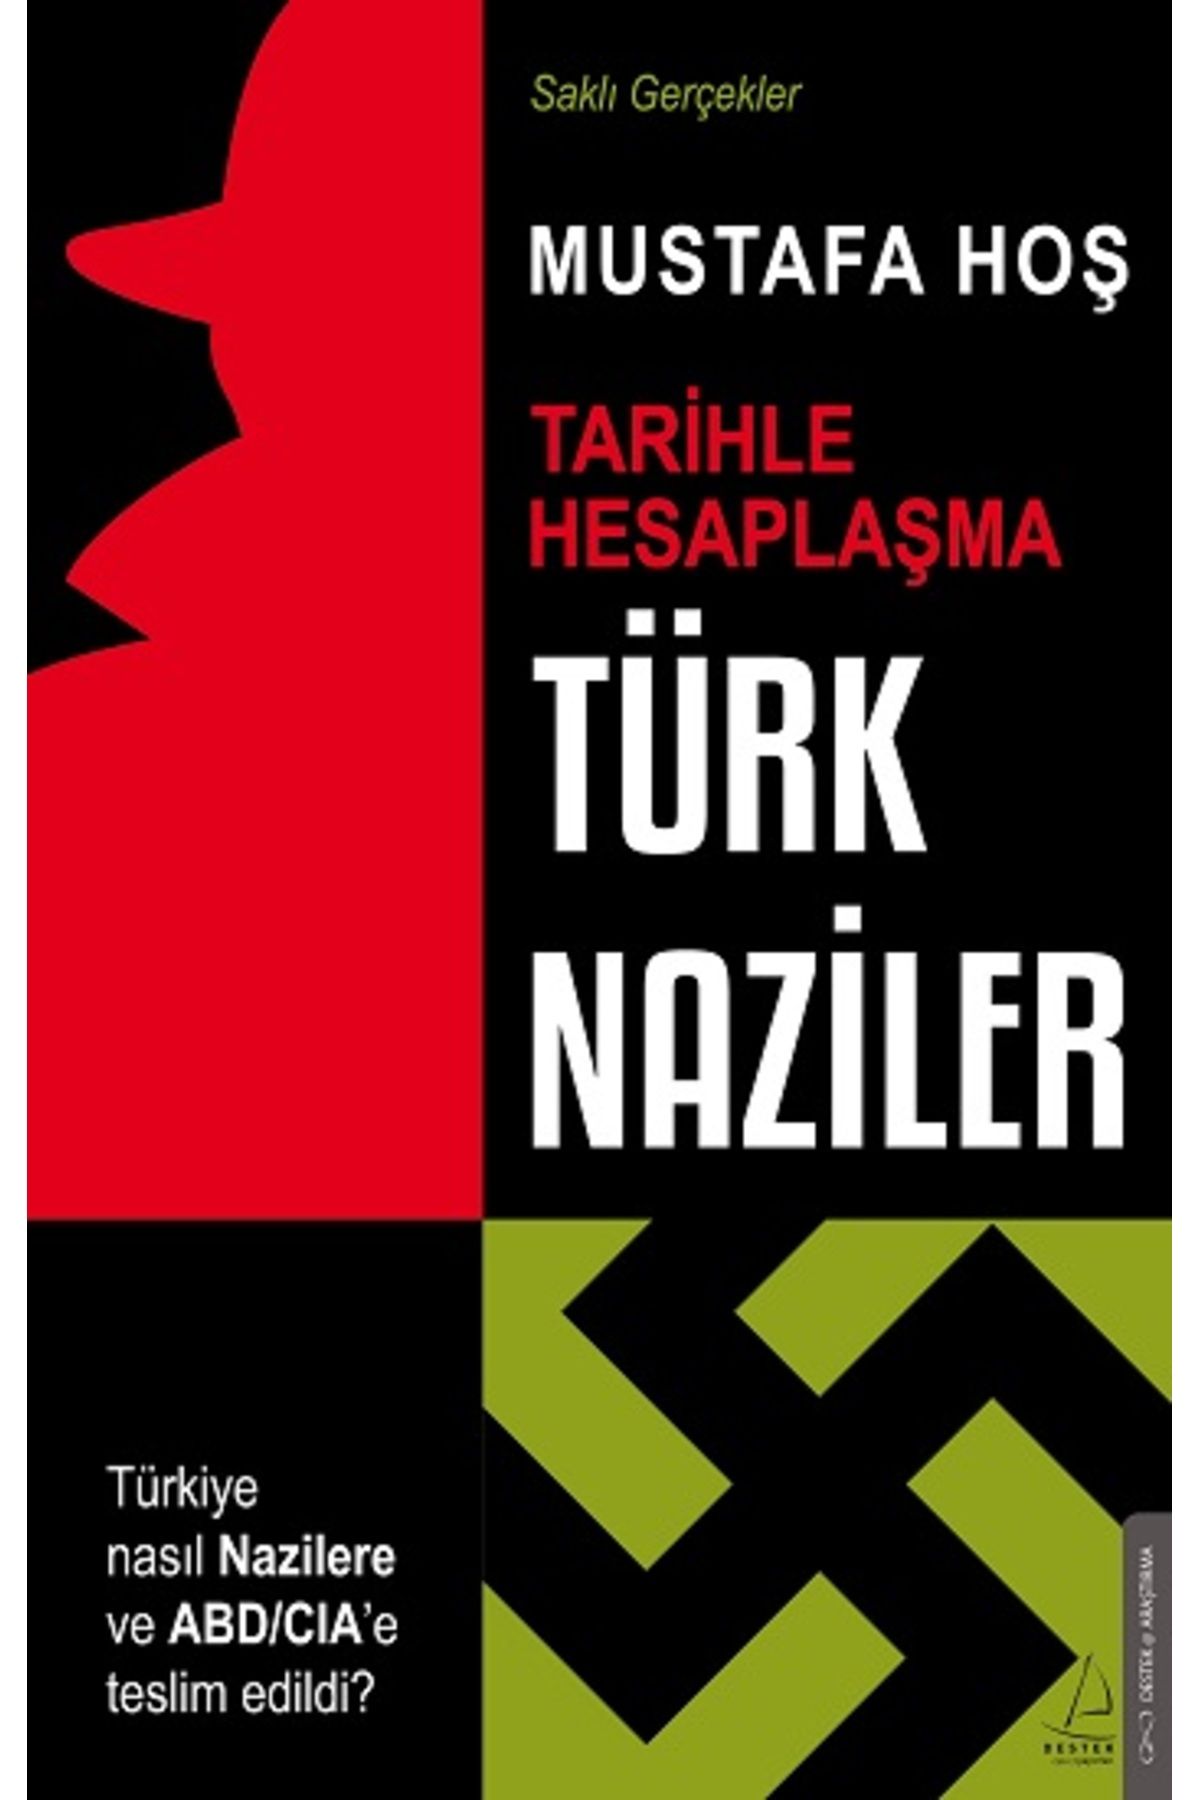 Destek Yayınları Türk Naziler Mustafa Hoş